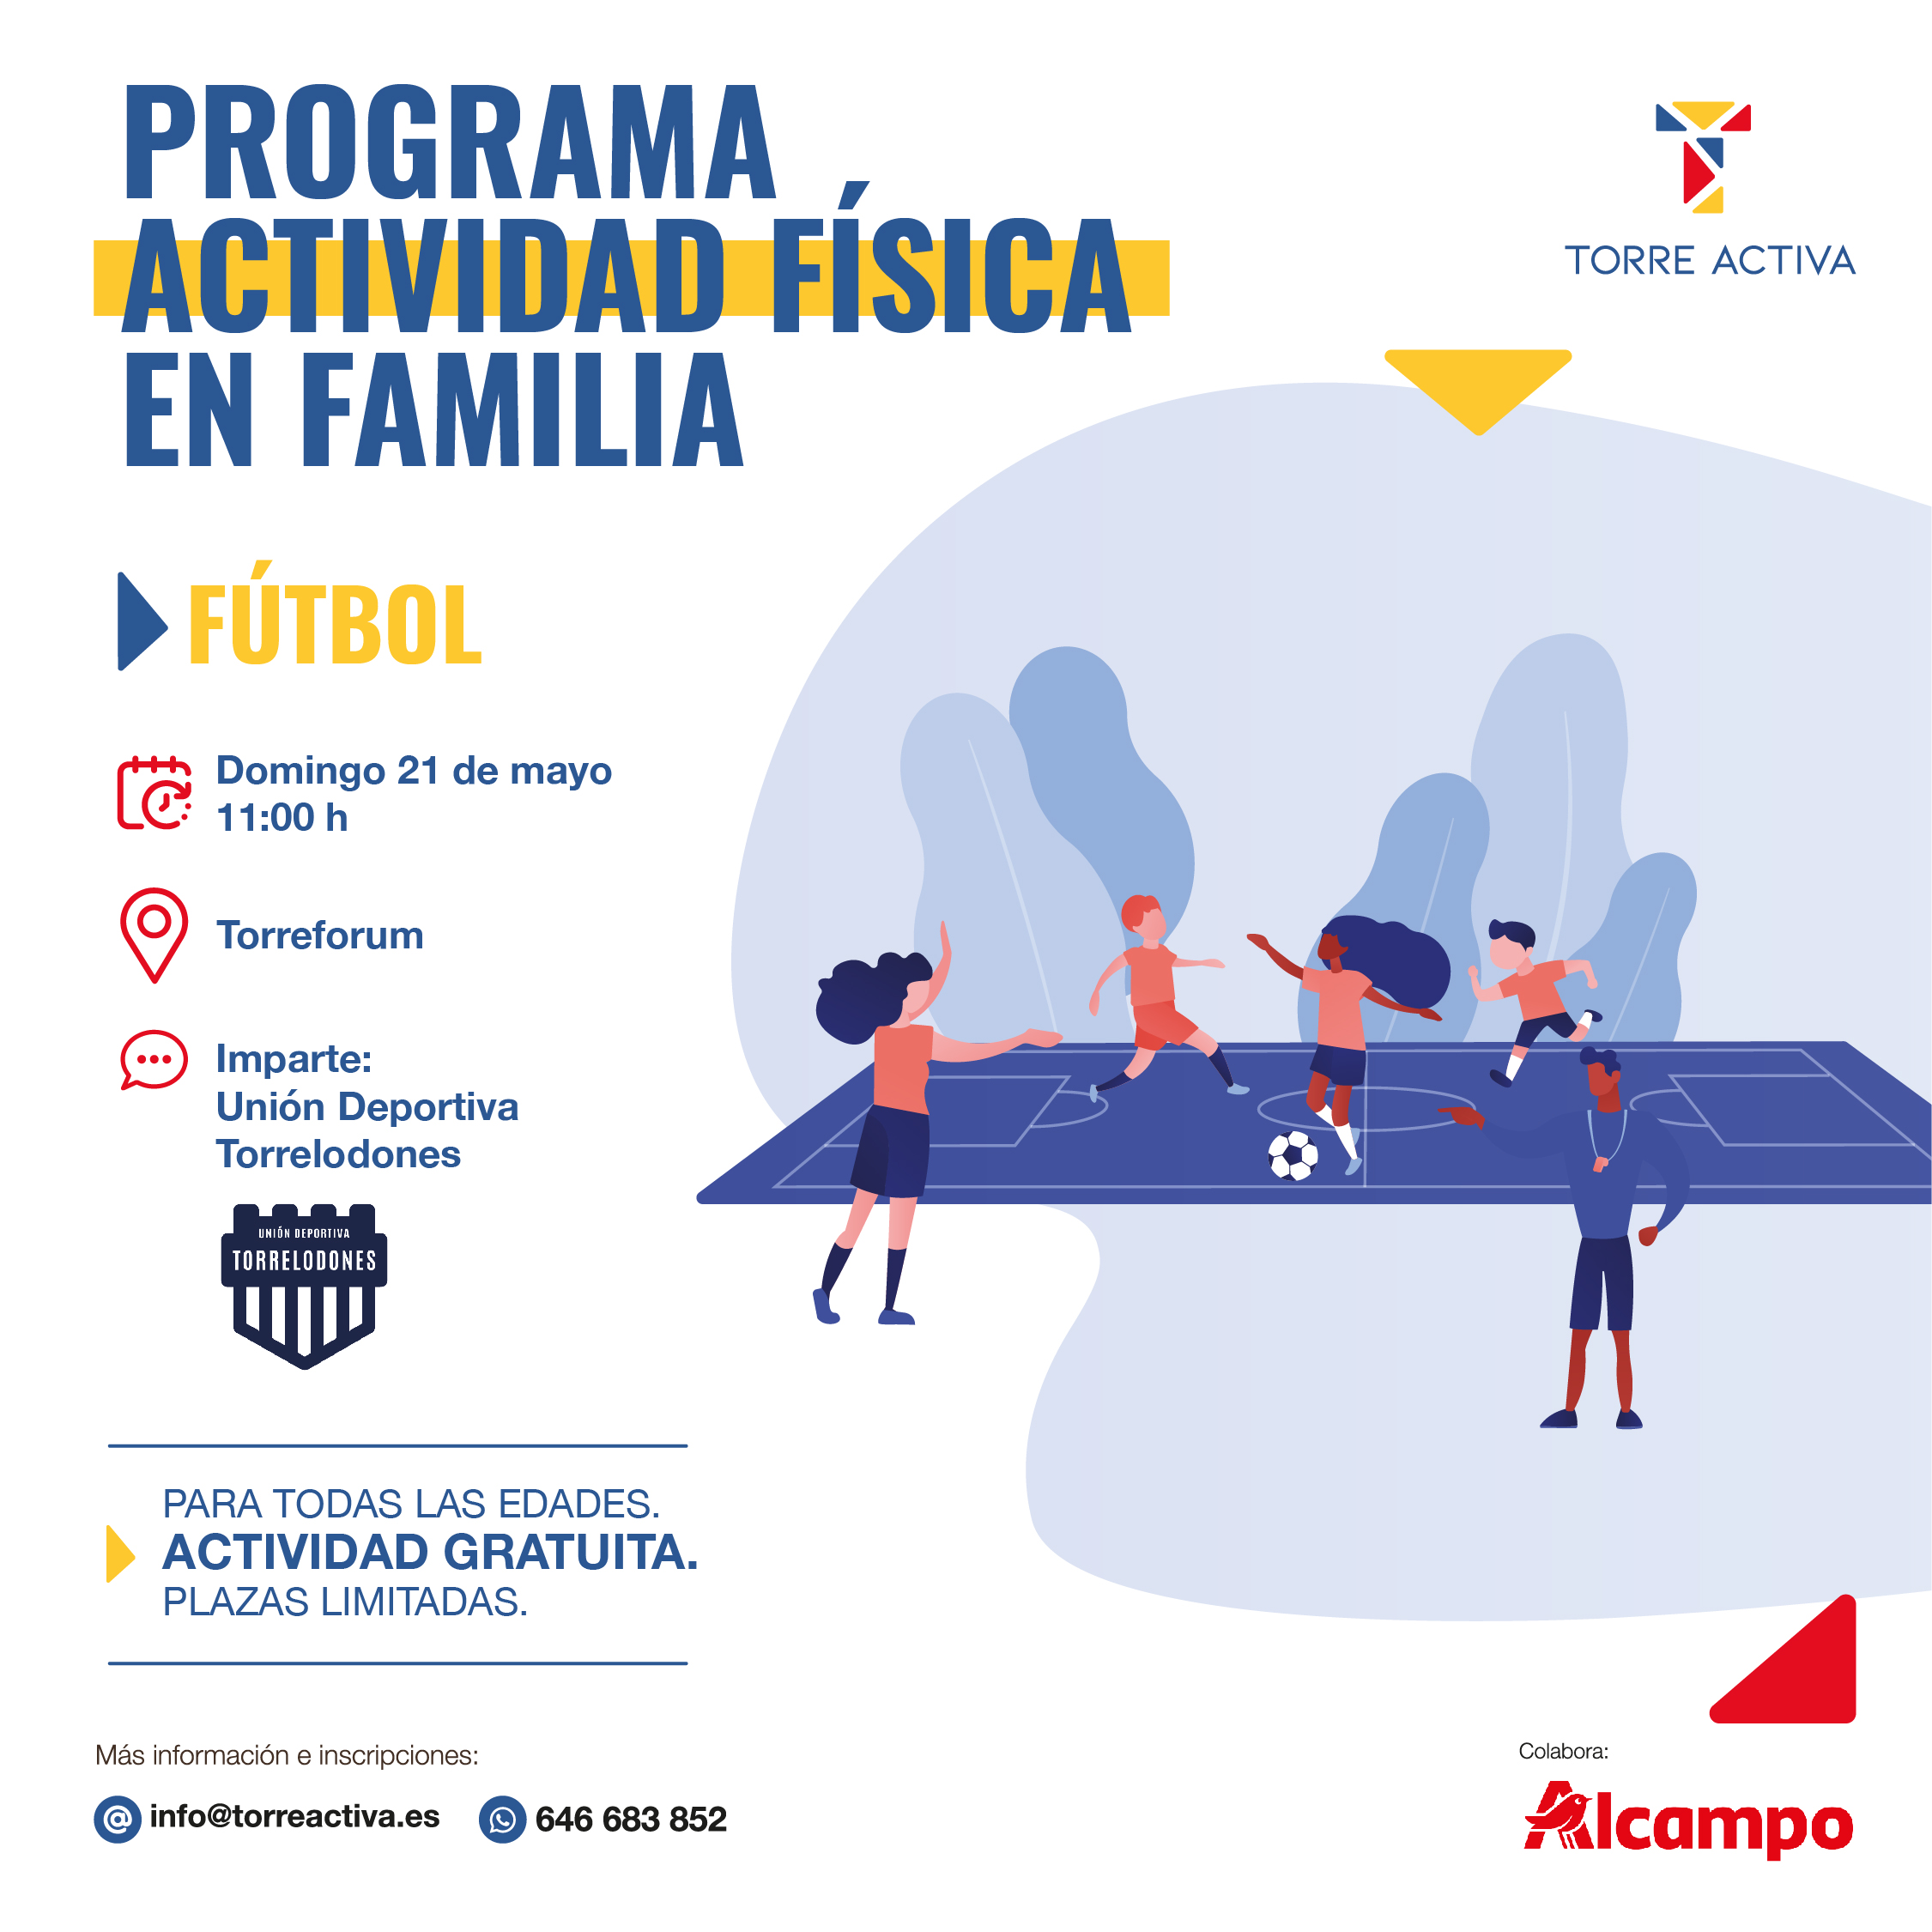 Nueva actividad del Programa Actividad Física en Familia: Fútbol